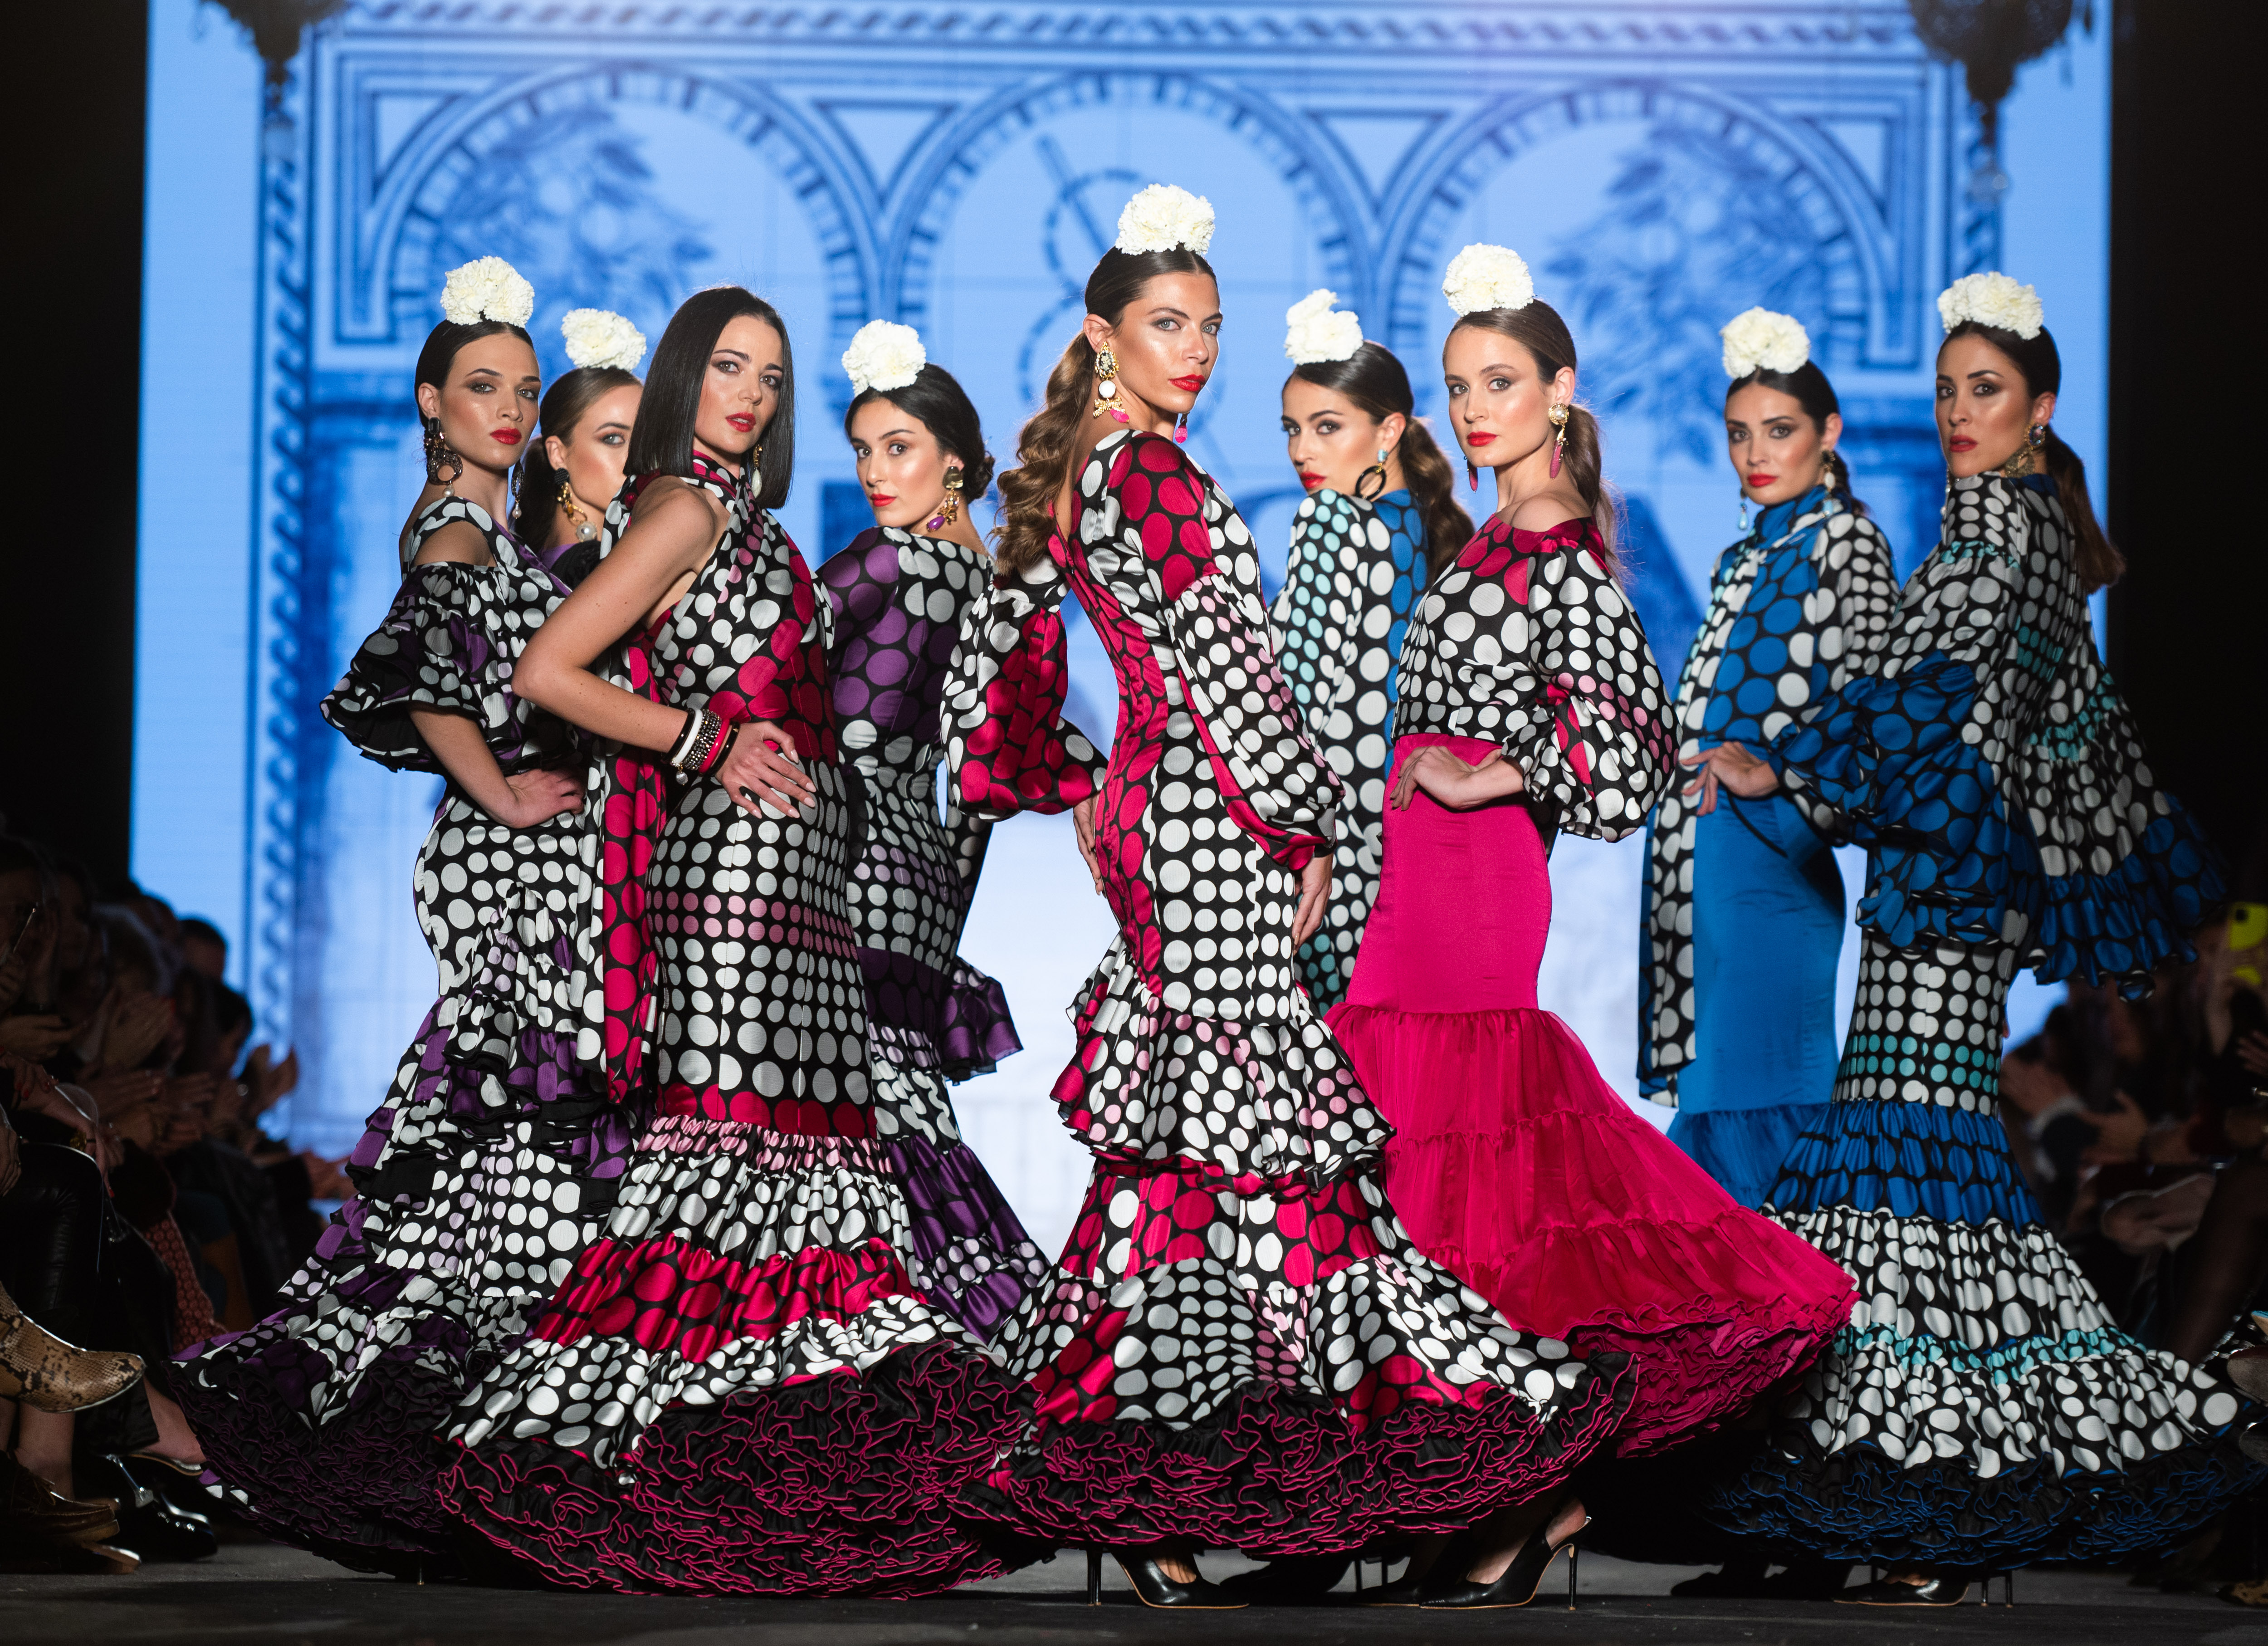 Las ganas de imponen en las dos pasarelas de moda flamenca de España | Estilo | EL PAÍS